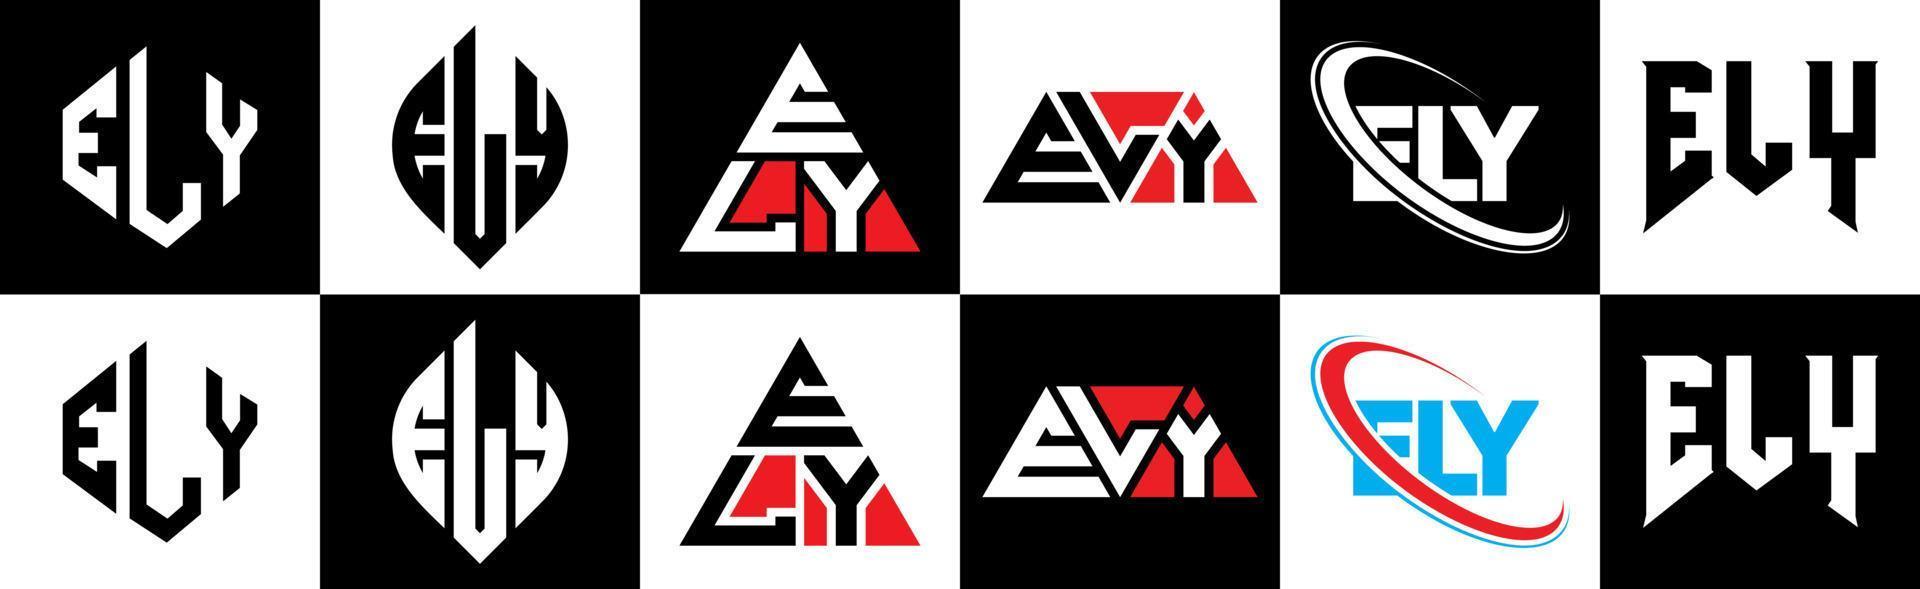 Ely-Buchstaben-Logo-Design in sechs Stilen. ely Polygon, Kreis, Dreieck, Sechseck, flacher und einfacher Stil mit schwarz-weißem Buchstabenlogo in einer Zeichenfläche. Ely minimalistisches und klassisches Logo vektor